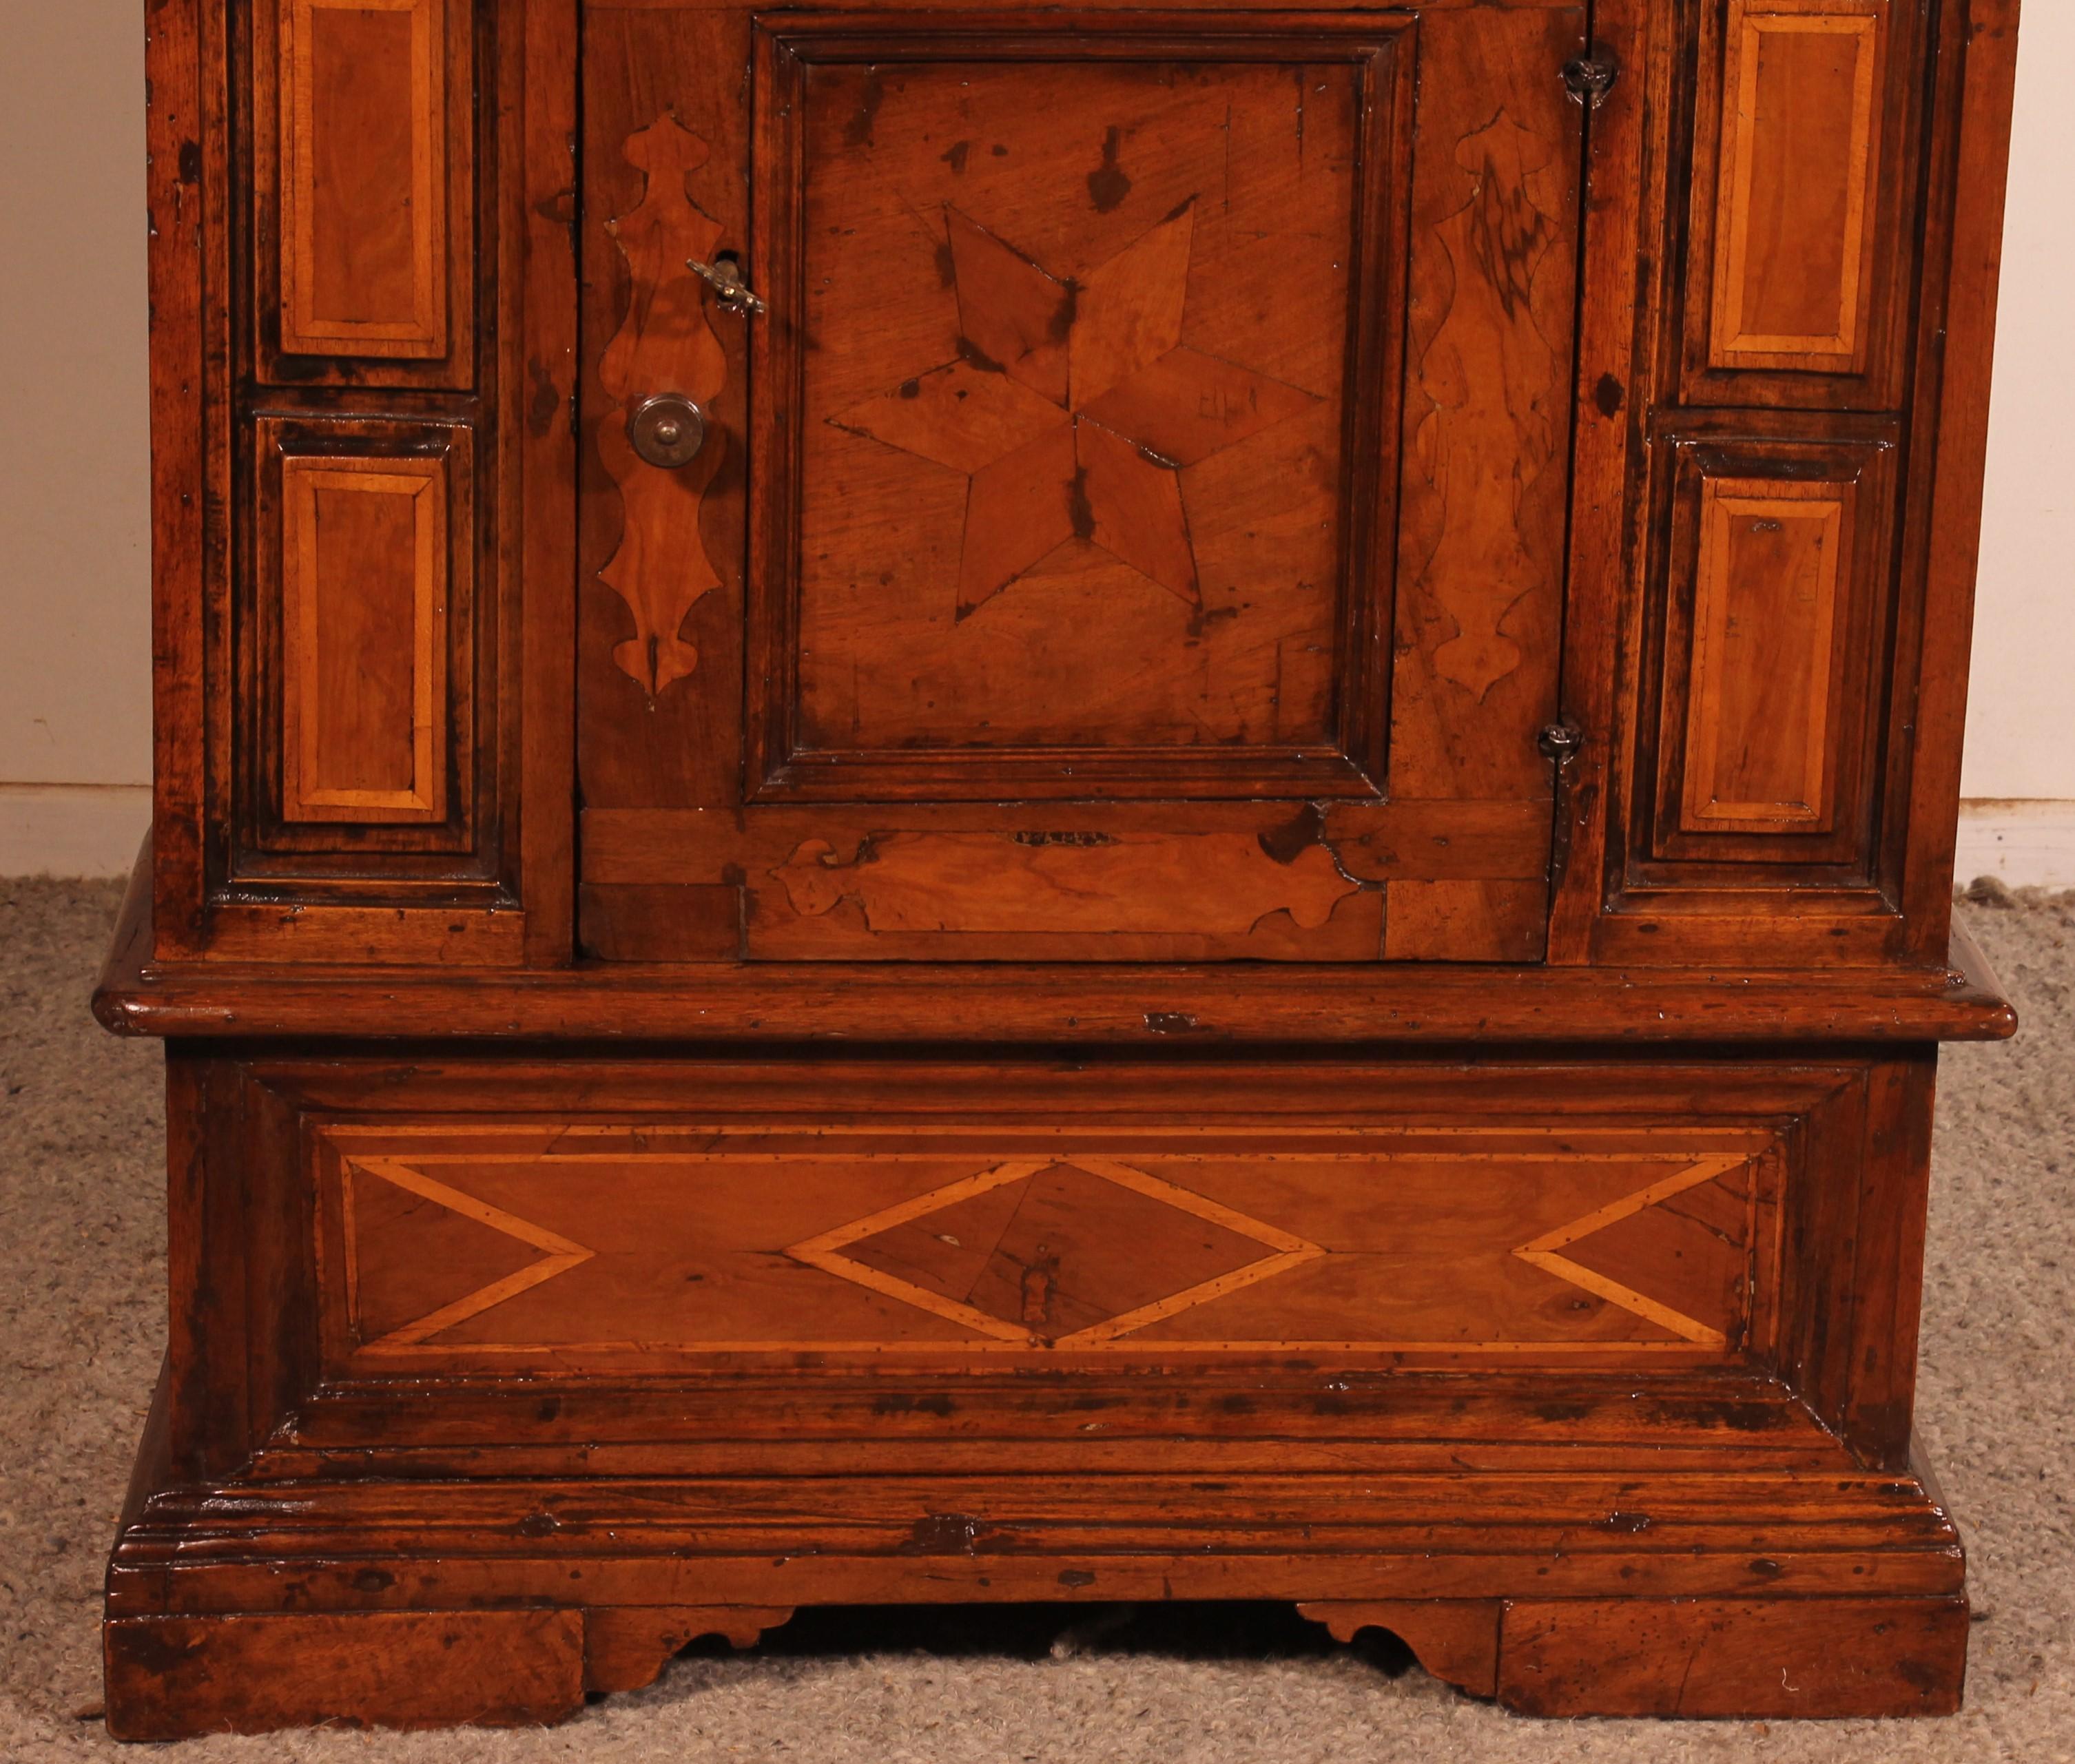 Elegant oratoire ou petit buffet en noyer du début du 17ème siècle provenant d'Italie

Très beau meuble de la Renaissance italienne composé d'une porte avec sa serrure et sa clé et de trois tiroirs.

Très belle table avec une patine et des